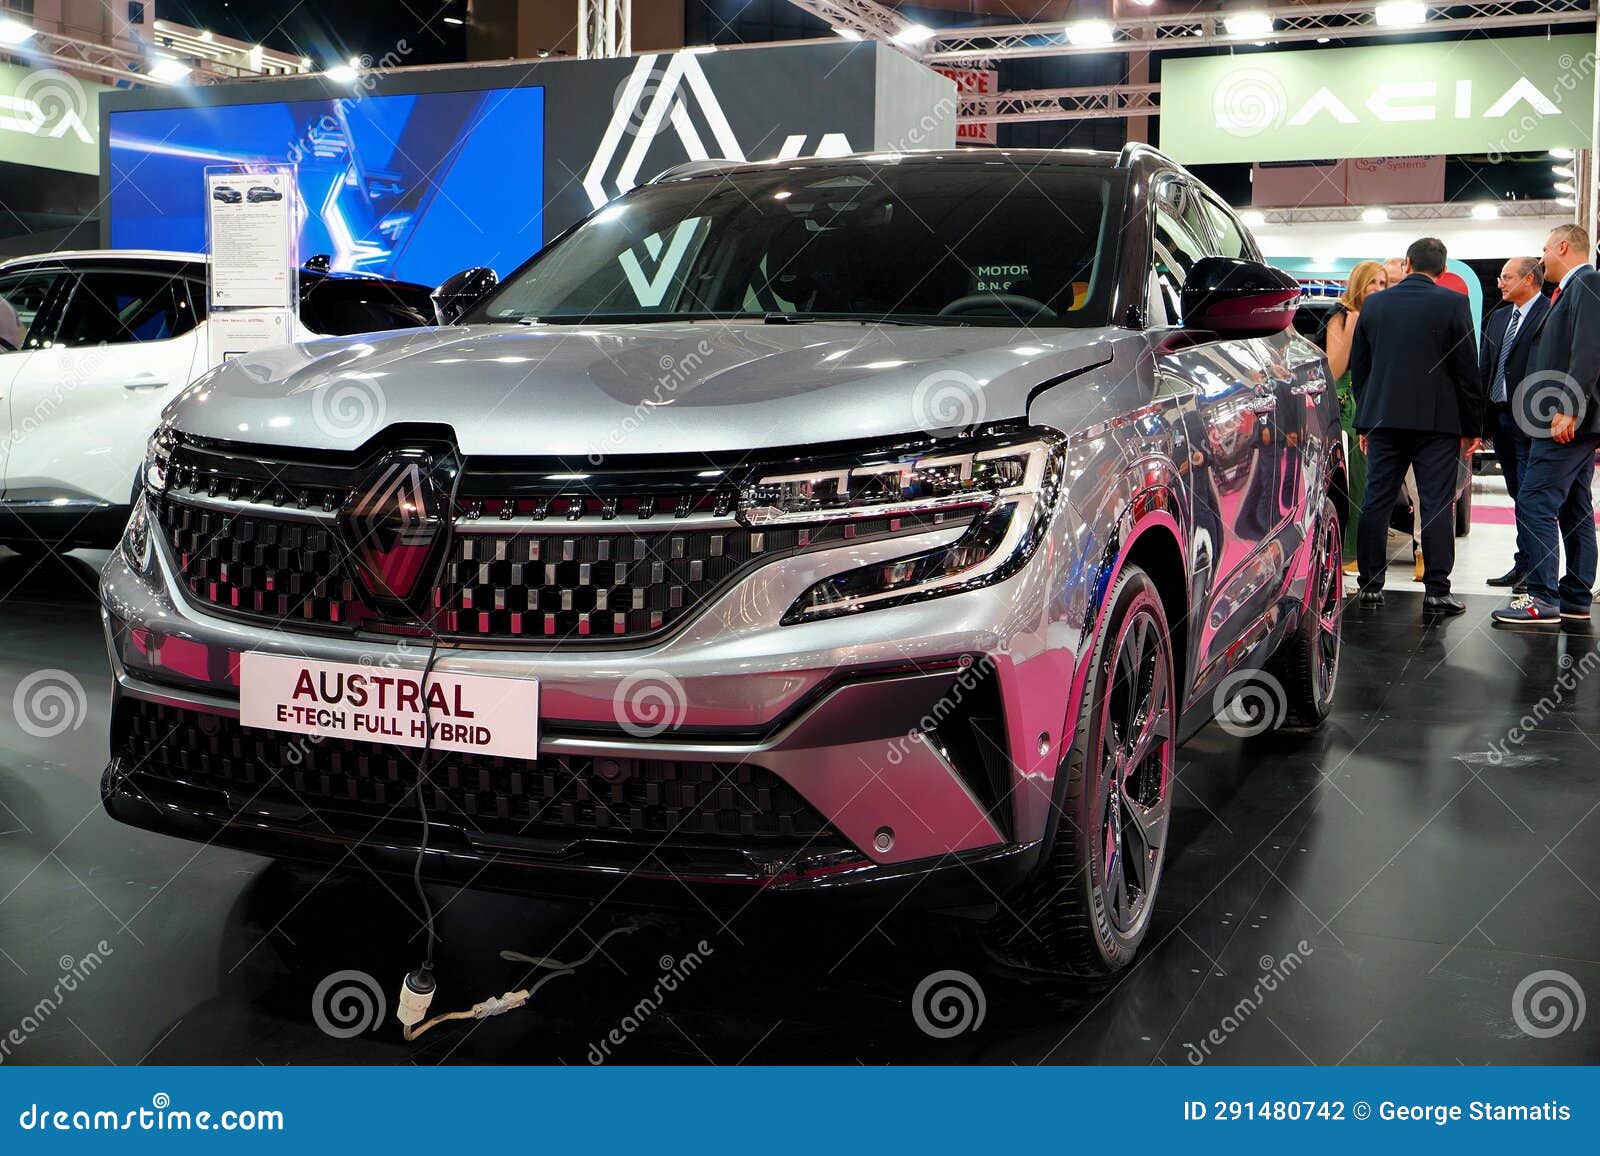 New Renault Austral E-Tech Full Hybrid